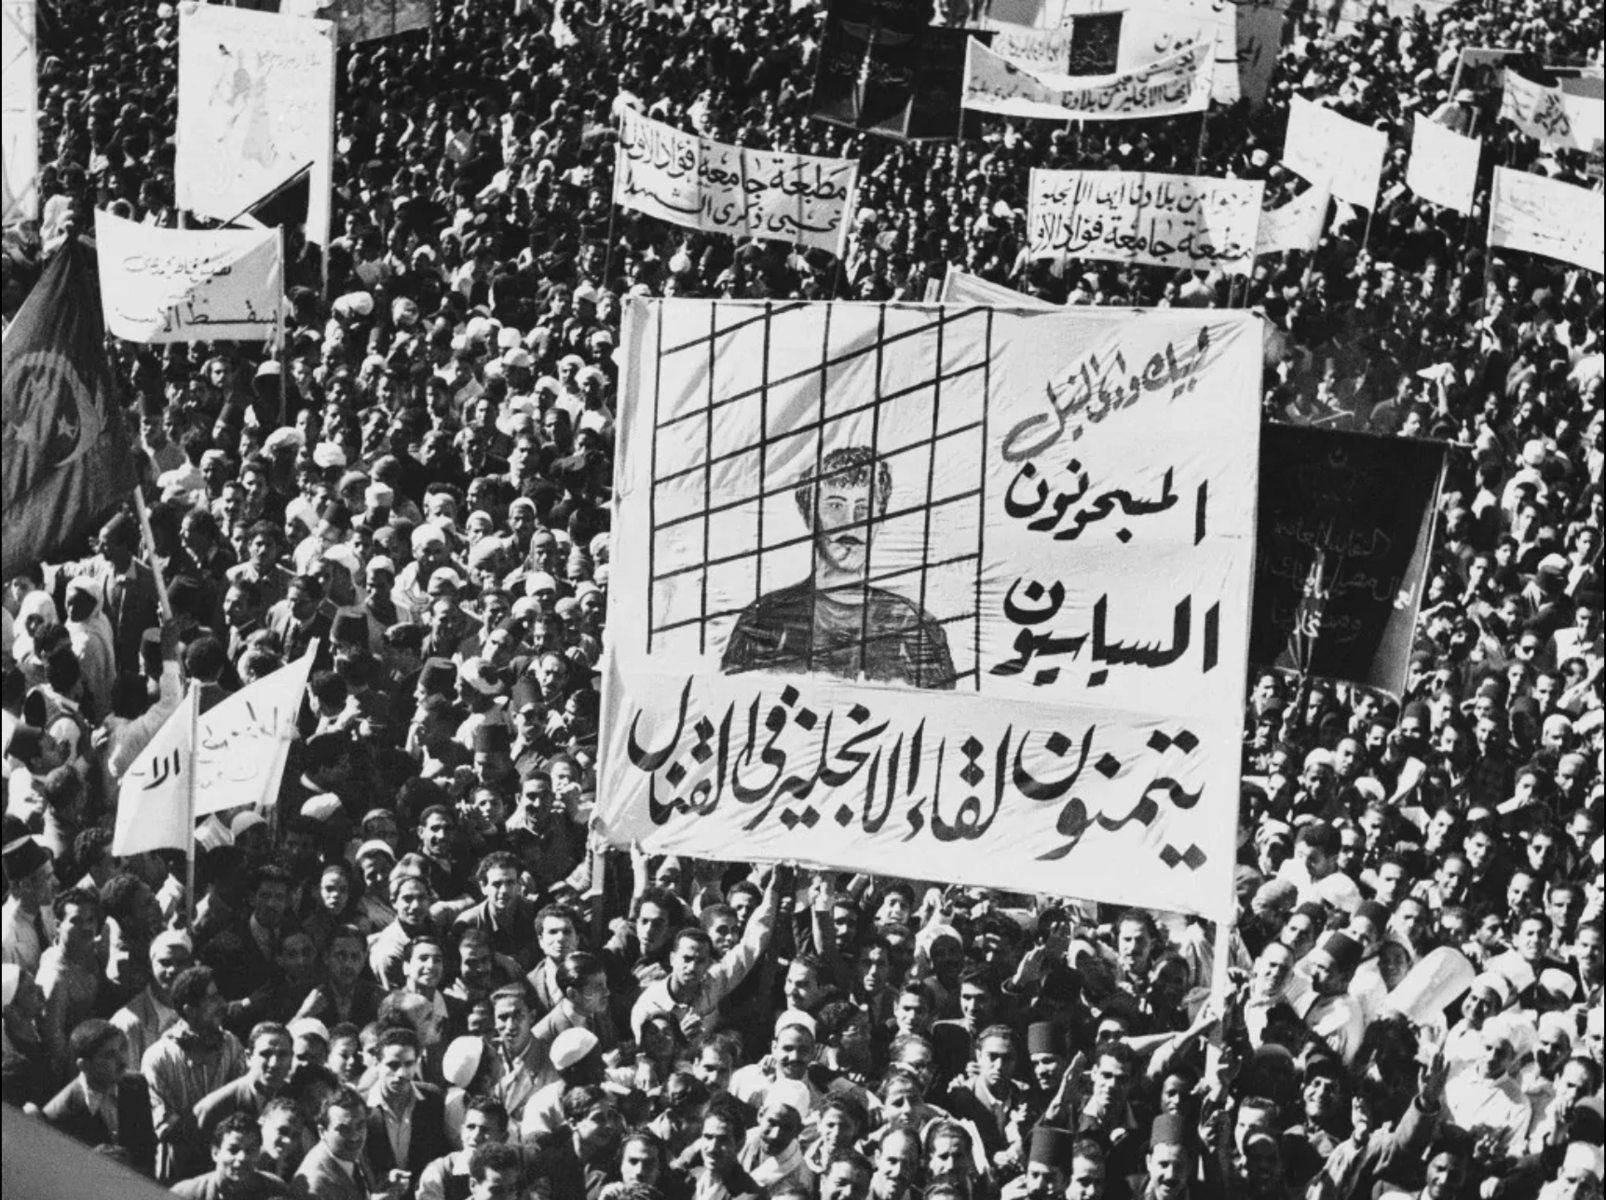 egyptian revolution 1952 essay